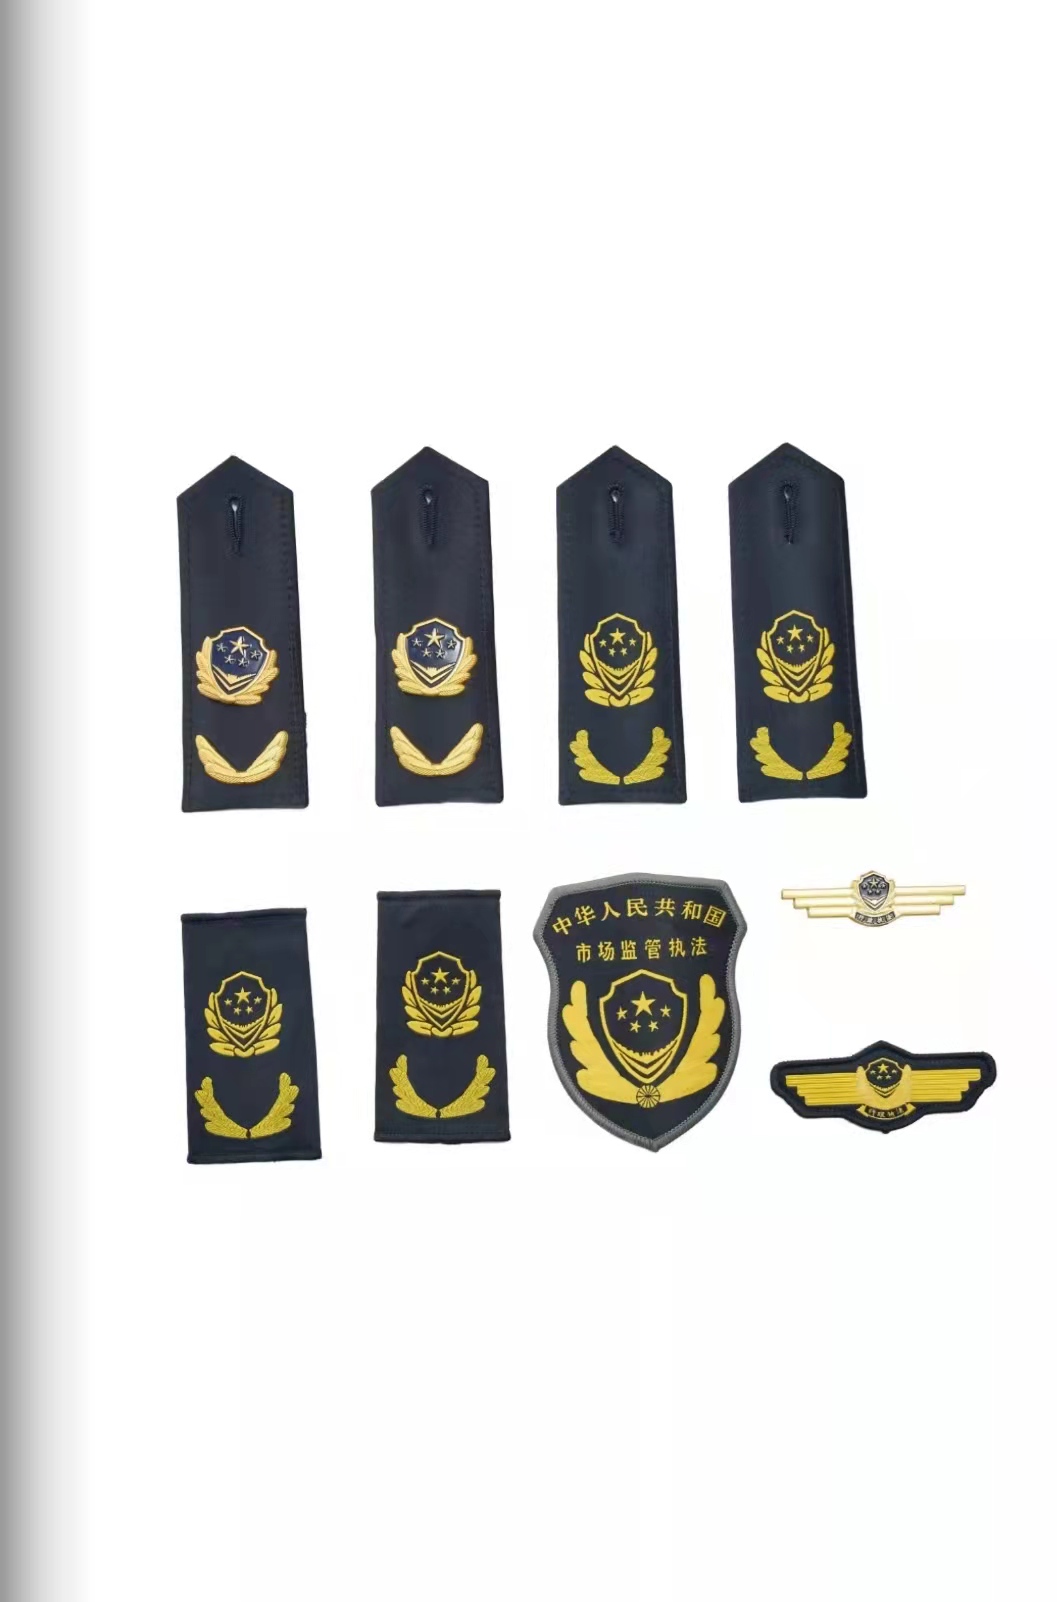 阿拉善六部门统一市场监管执法制服标志